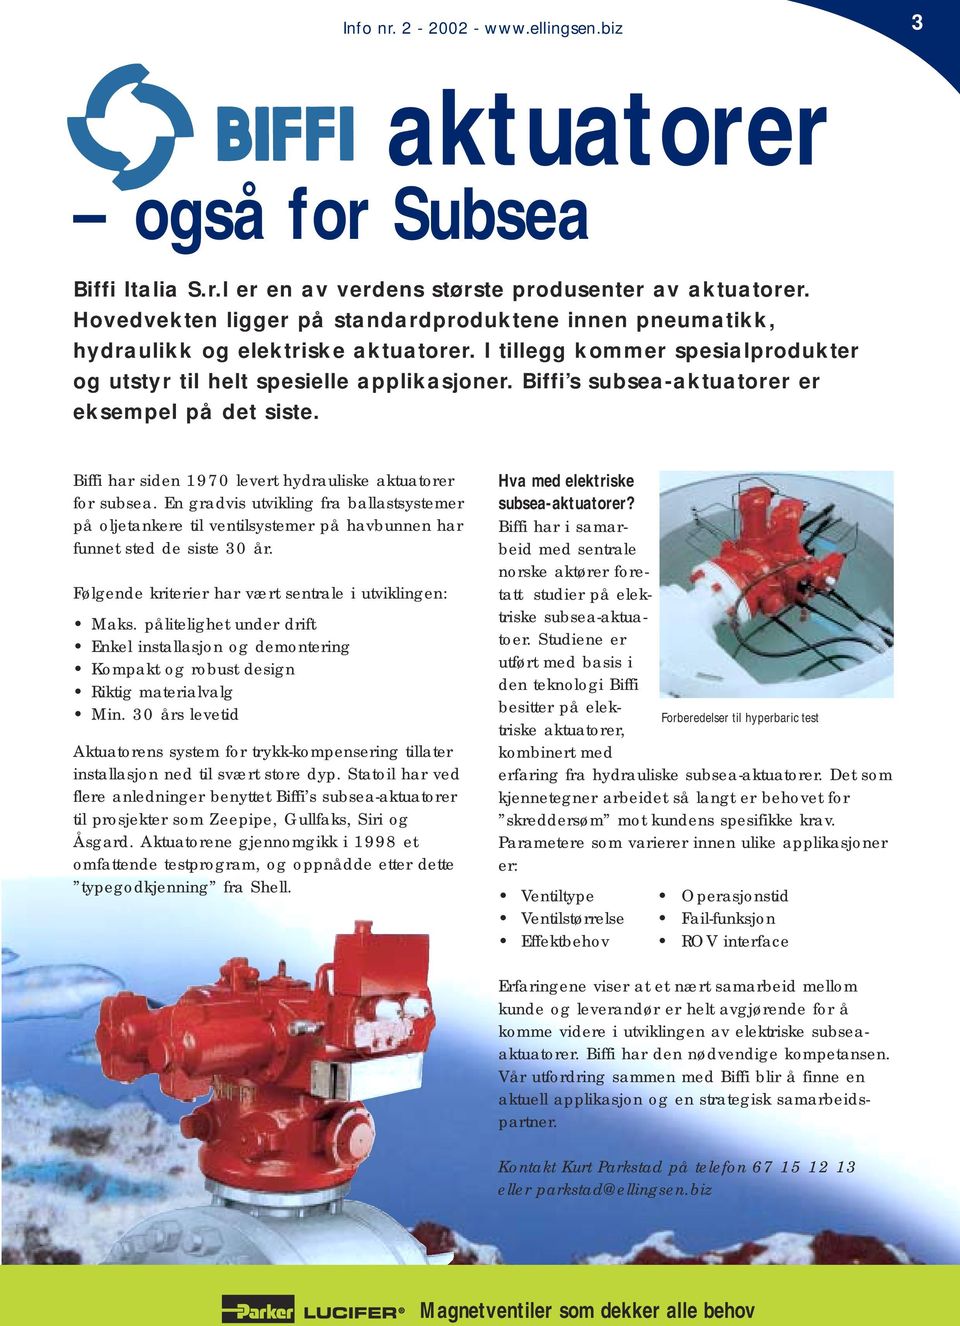 Biffi s subsea-aktuatorer er eksempel på det siste. Biffi har siden 1970 levert hydrauliske aktuatorer for subsea.